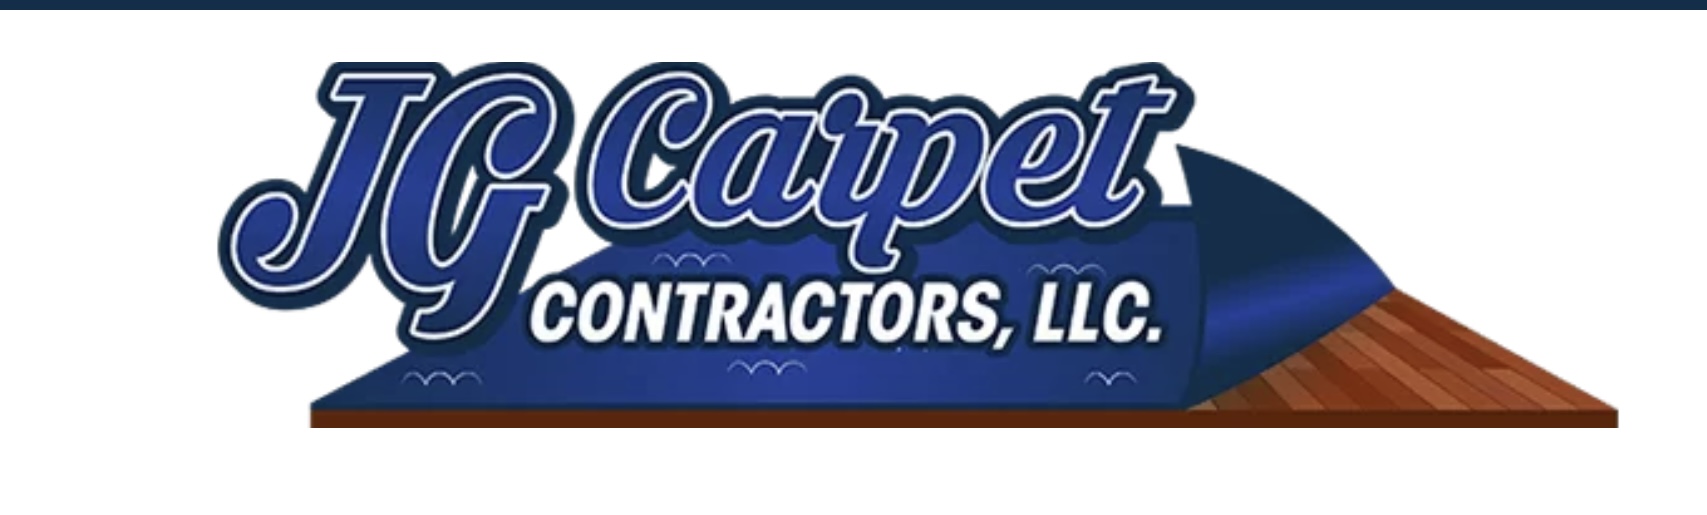 J. G. Carpet Contractors, LLC Logo